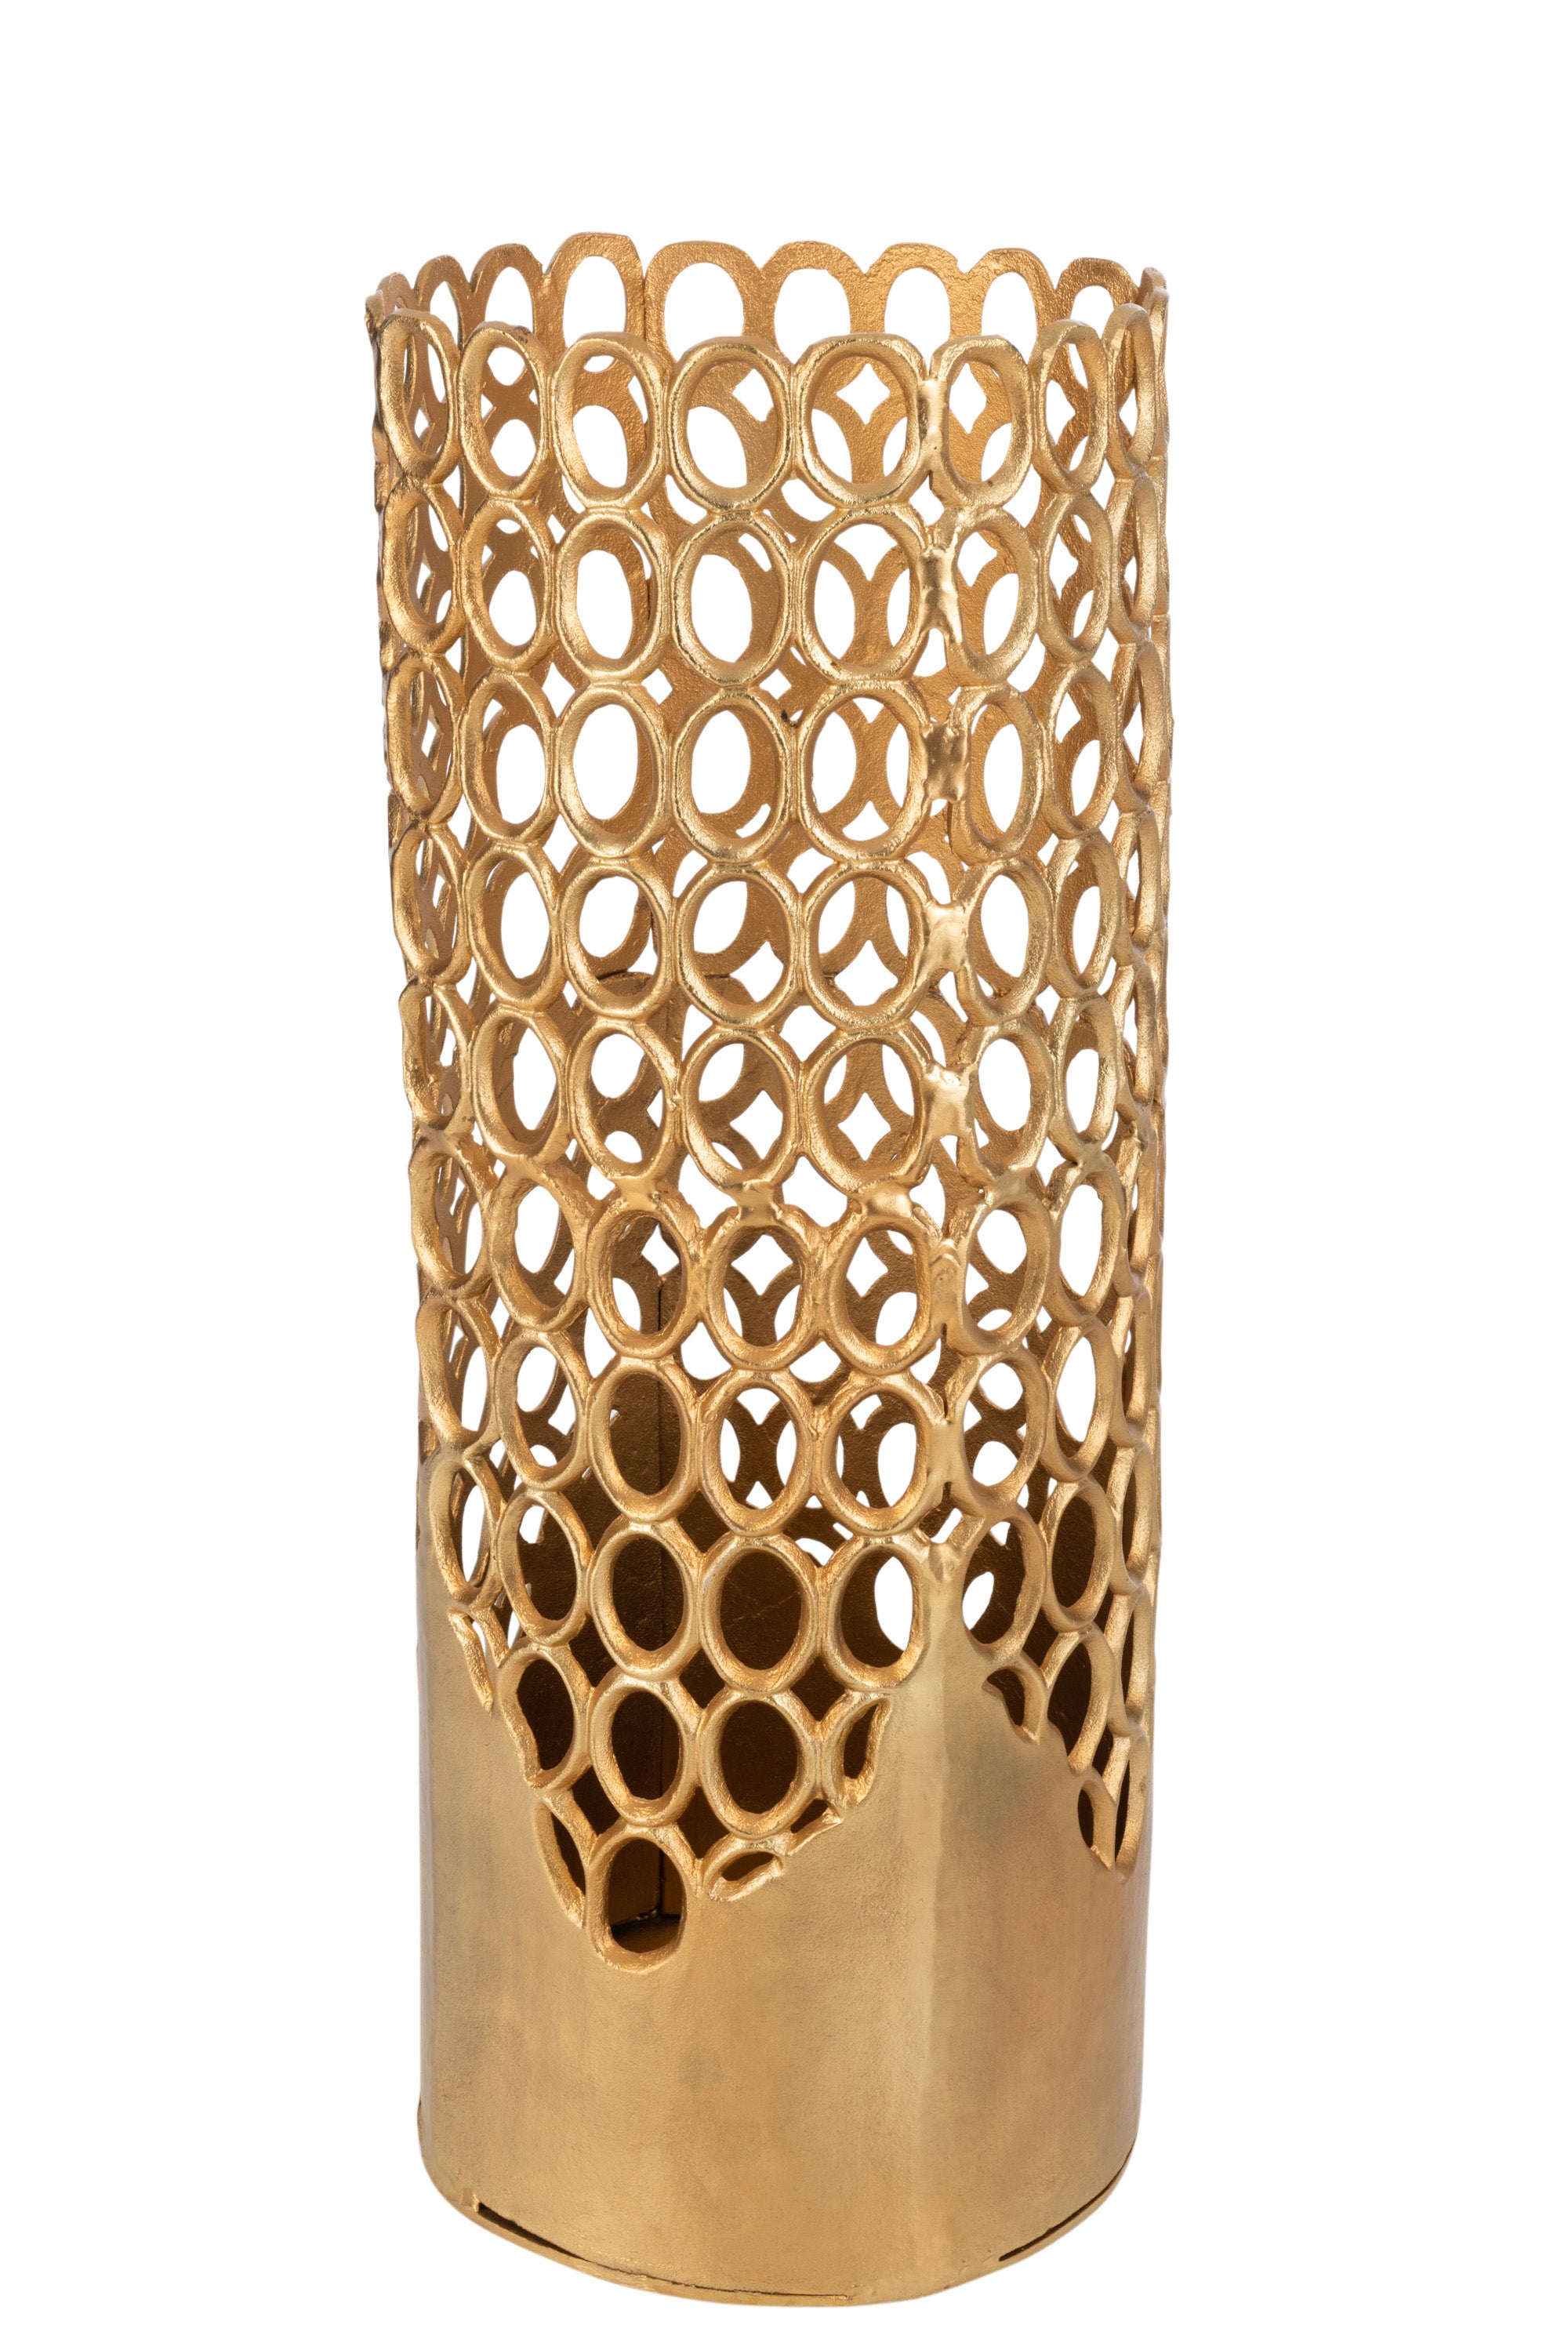 Hohe zylinderförmige Vase aus goldfarbenem Aluminium; an den glatten untere Bereich mit unregelmäßigem Abschluss, setzt sich ein Gefüge von goldenen Ringen bis zum oberen Abschluß fort.